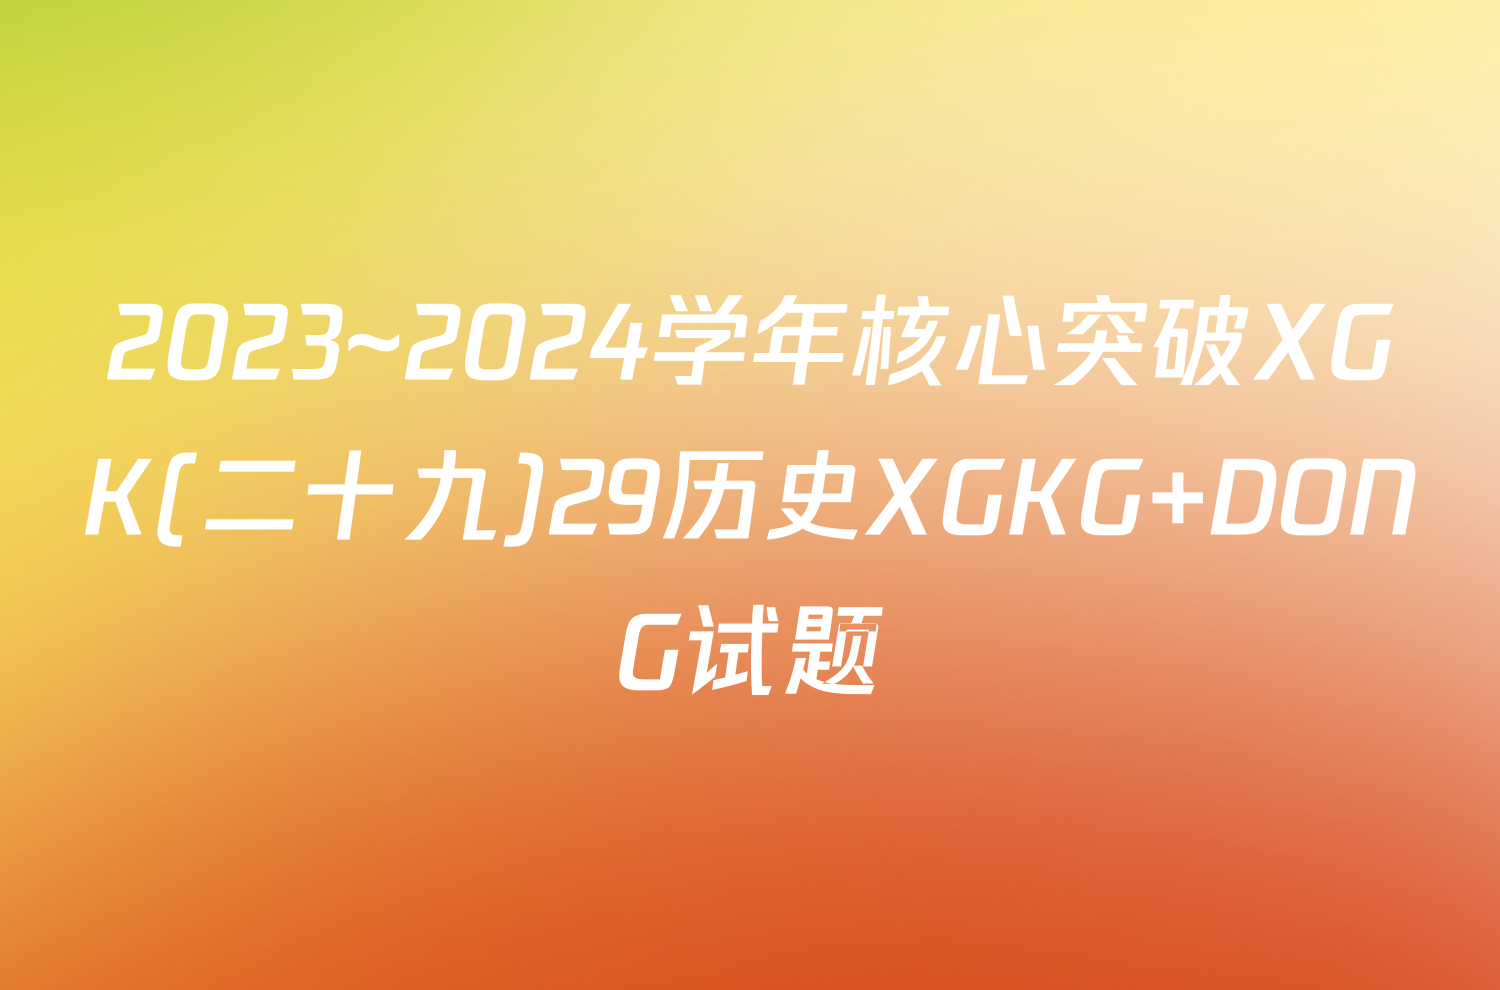 2023~2024学年核心突破XGK(二十九)29历史XGKG DONG试题